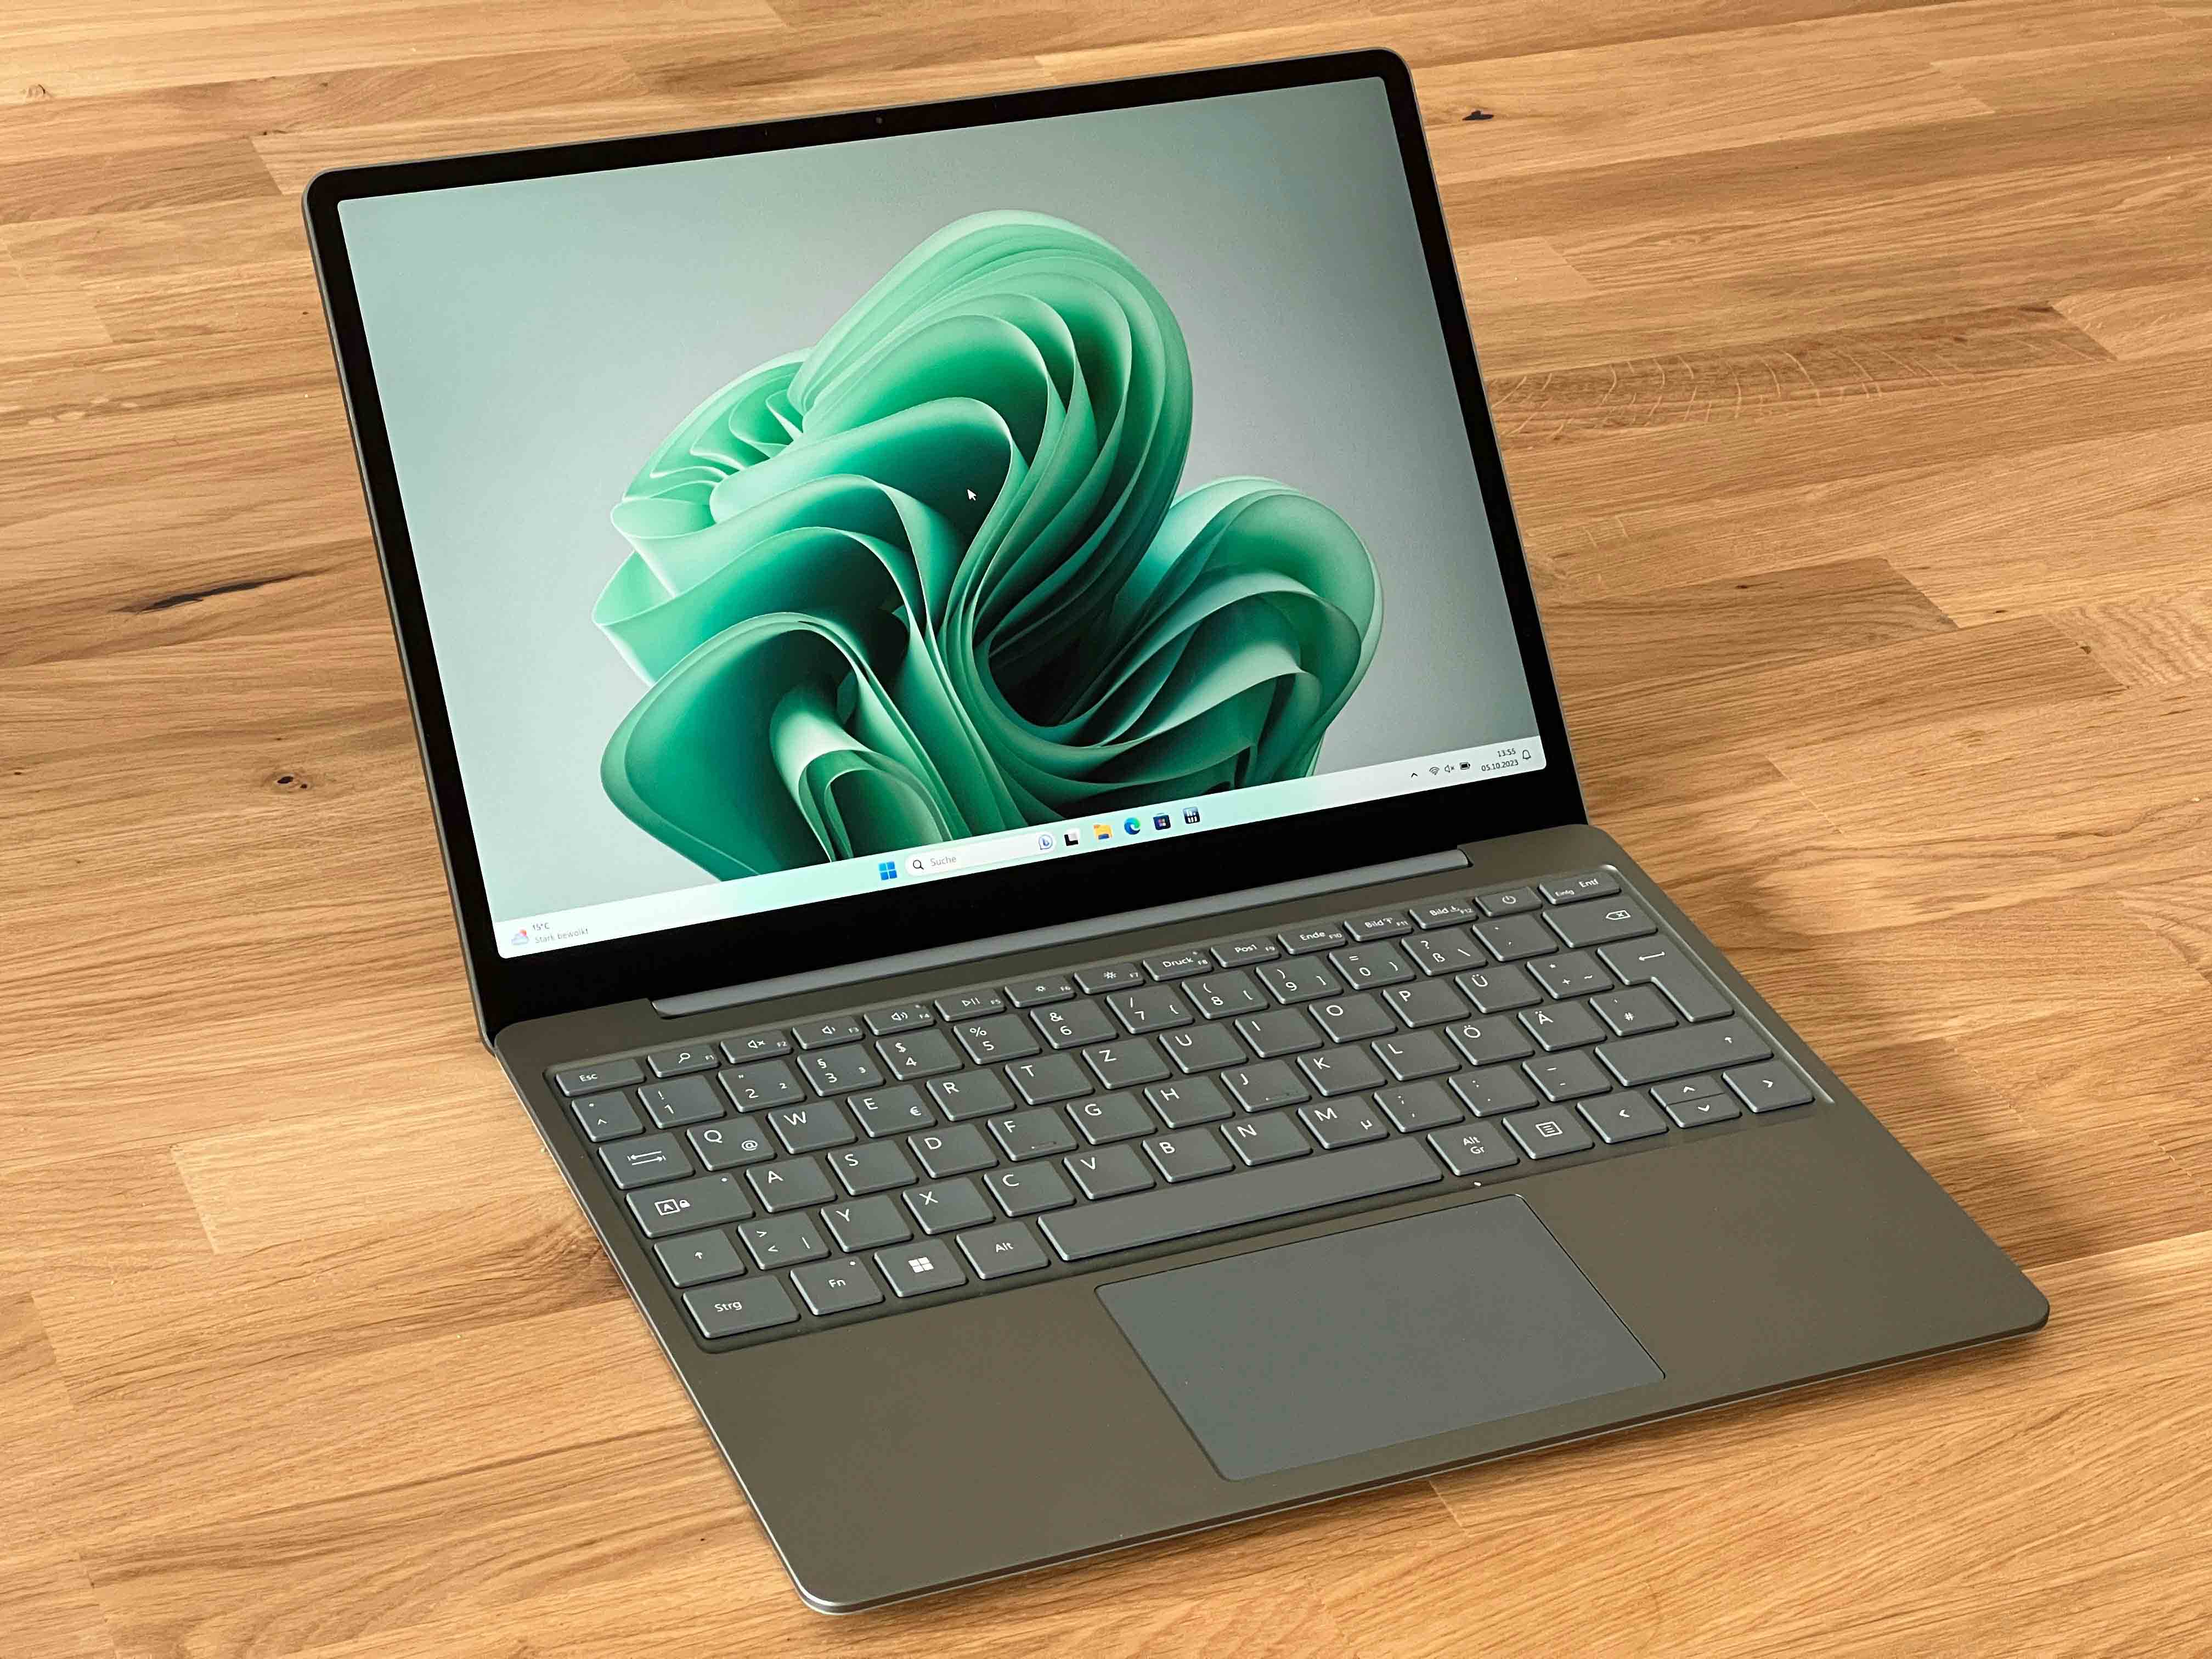 Überteuertes 3 Microsoft - ohne Go Test Notebookcheck.com Laptop - Surface im Subnotebook Tests Tastaturbeleuchtung